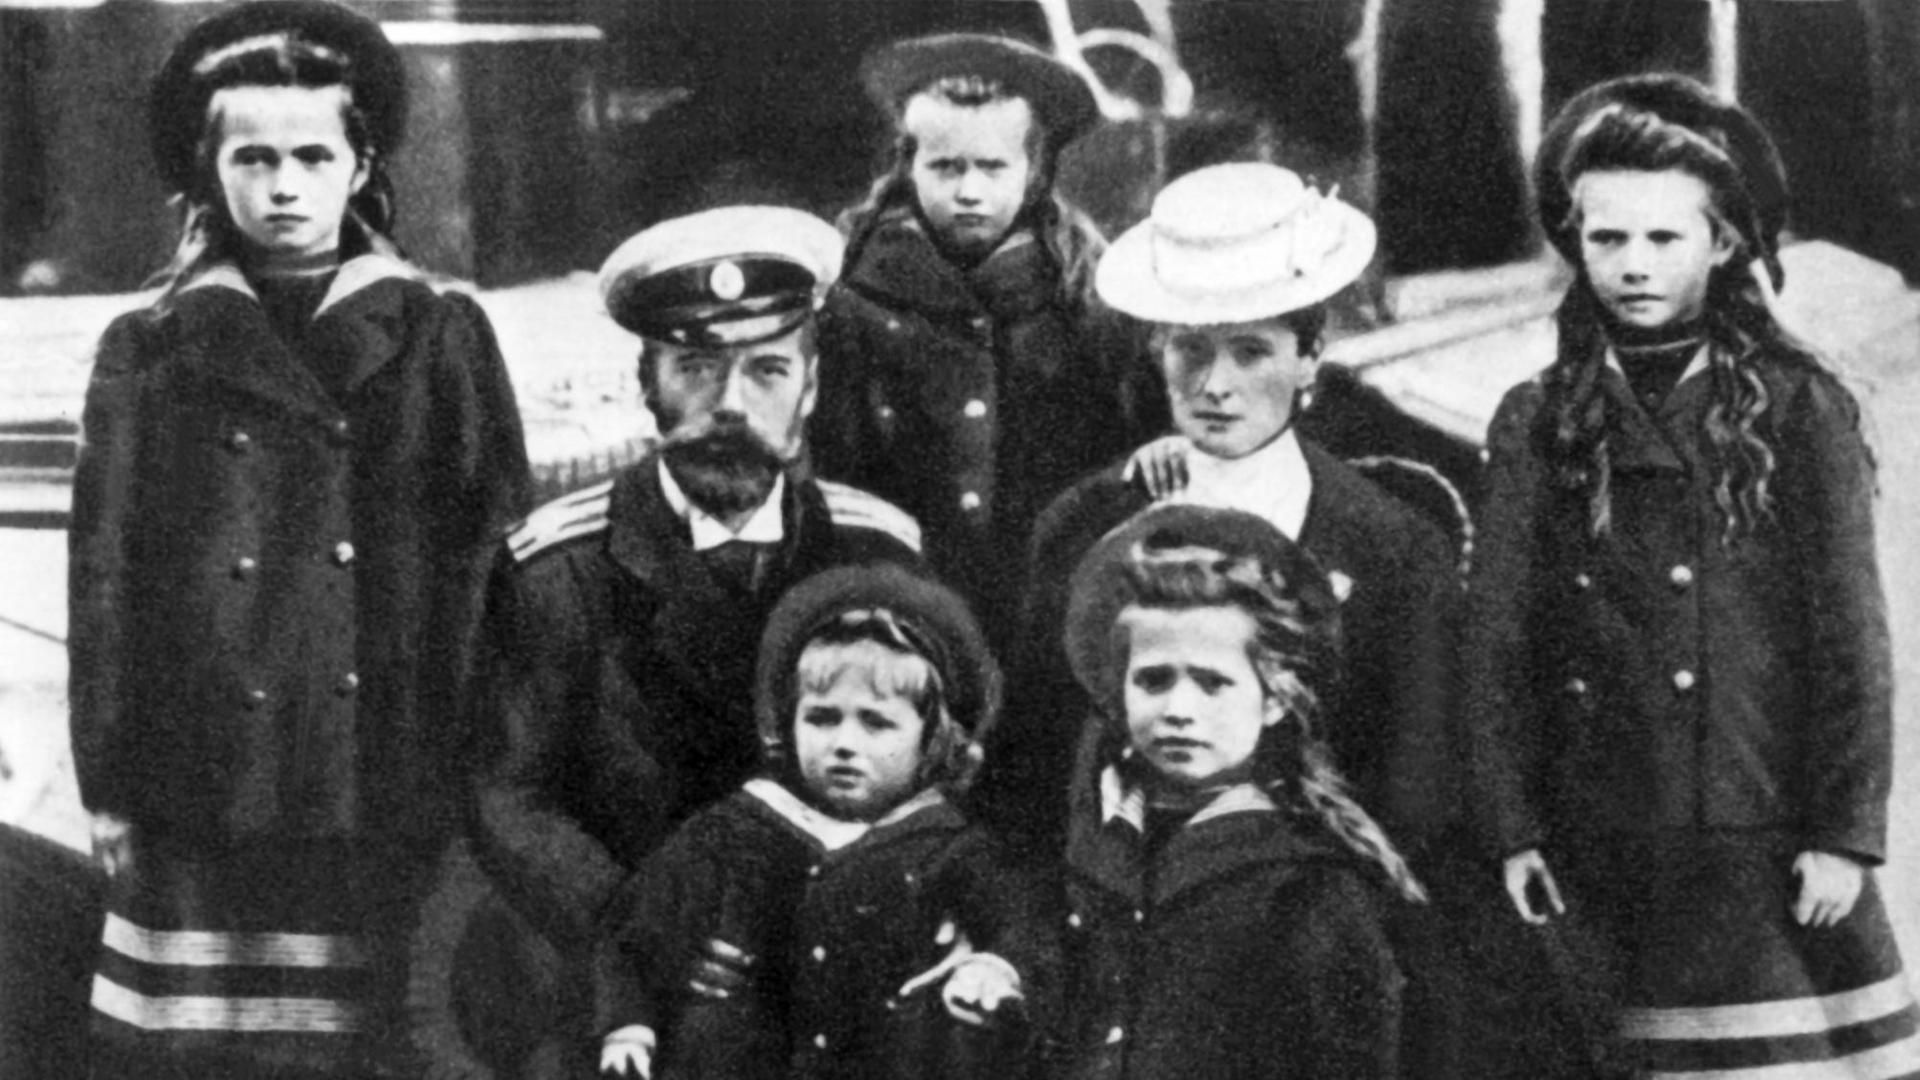 Undatierte Aufnahme des letzten russischen Zaren Nikolaus II. und seiner Ehefrau Alexandra Feodorowna (geborene Alix, Prinzessin von Hessen-Darmstadt) mit ihren Kindern (l-r) Olga, Alexej (vorn), Maria, Anastasia (vorn) und Tatjana.